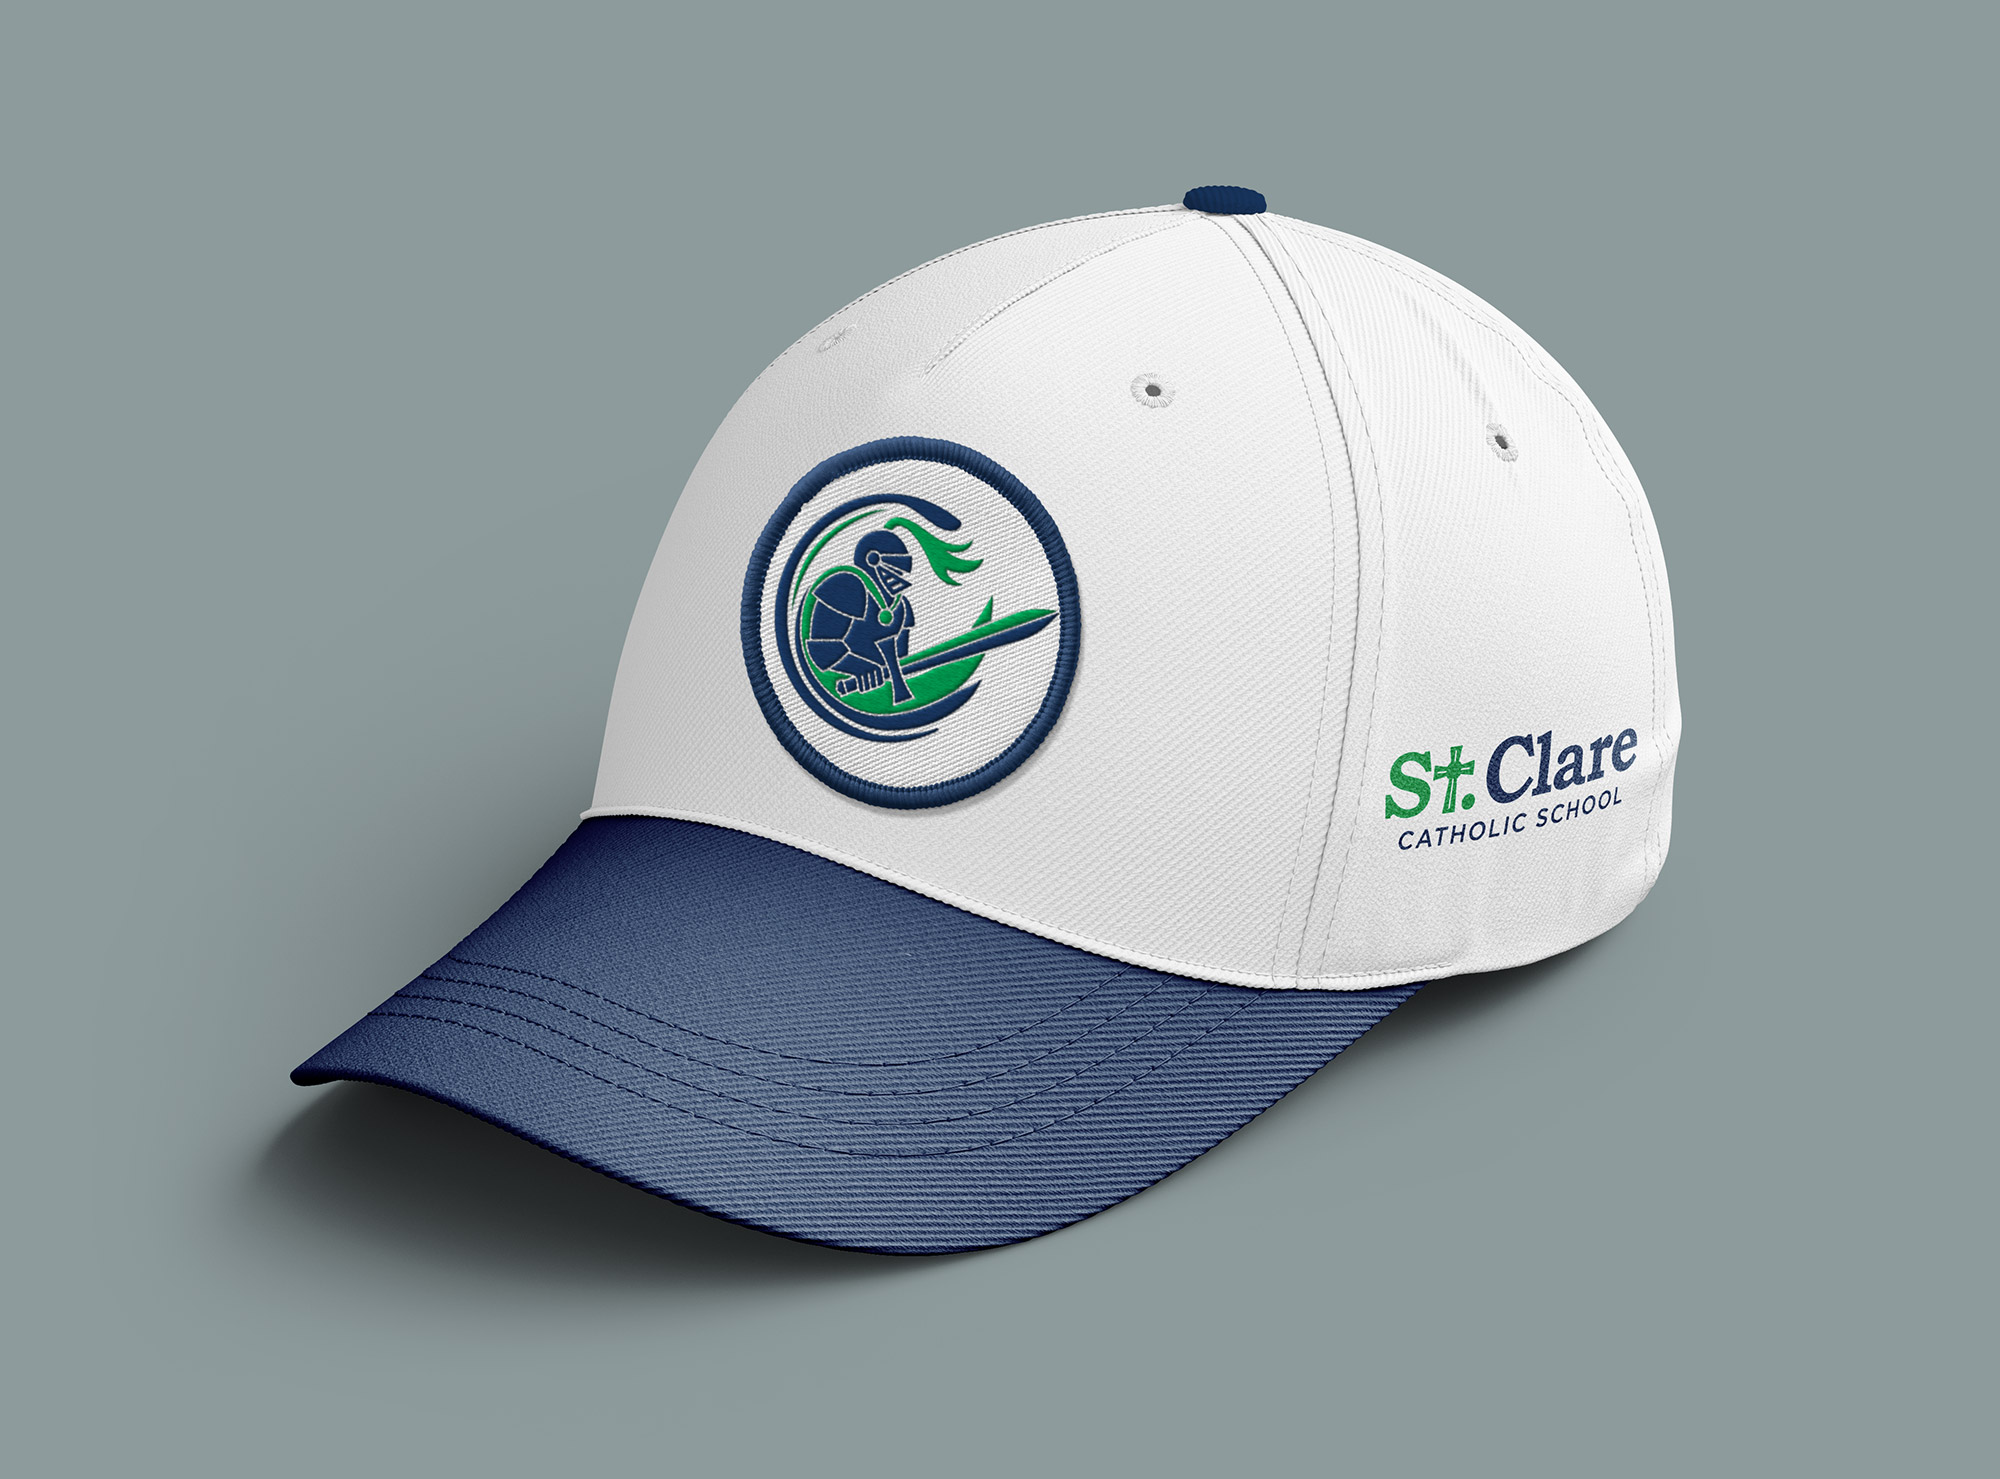 scs baseball hat design